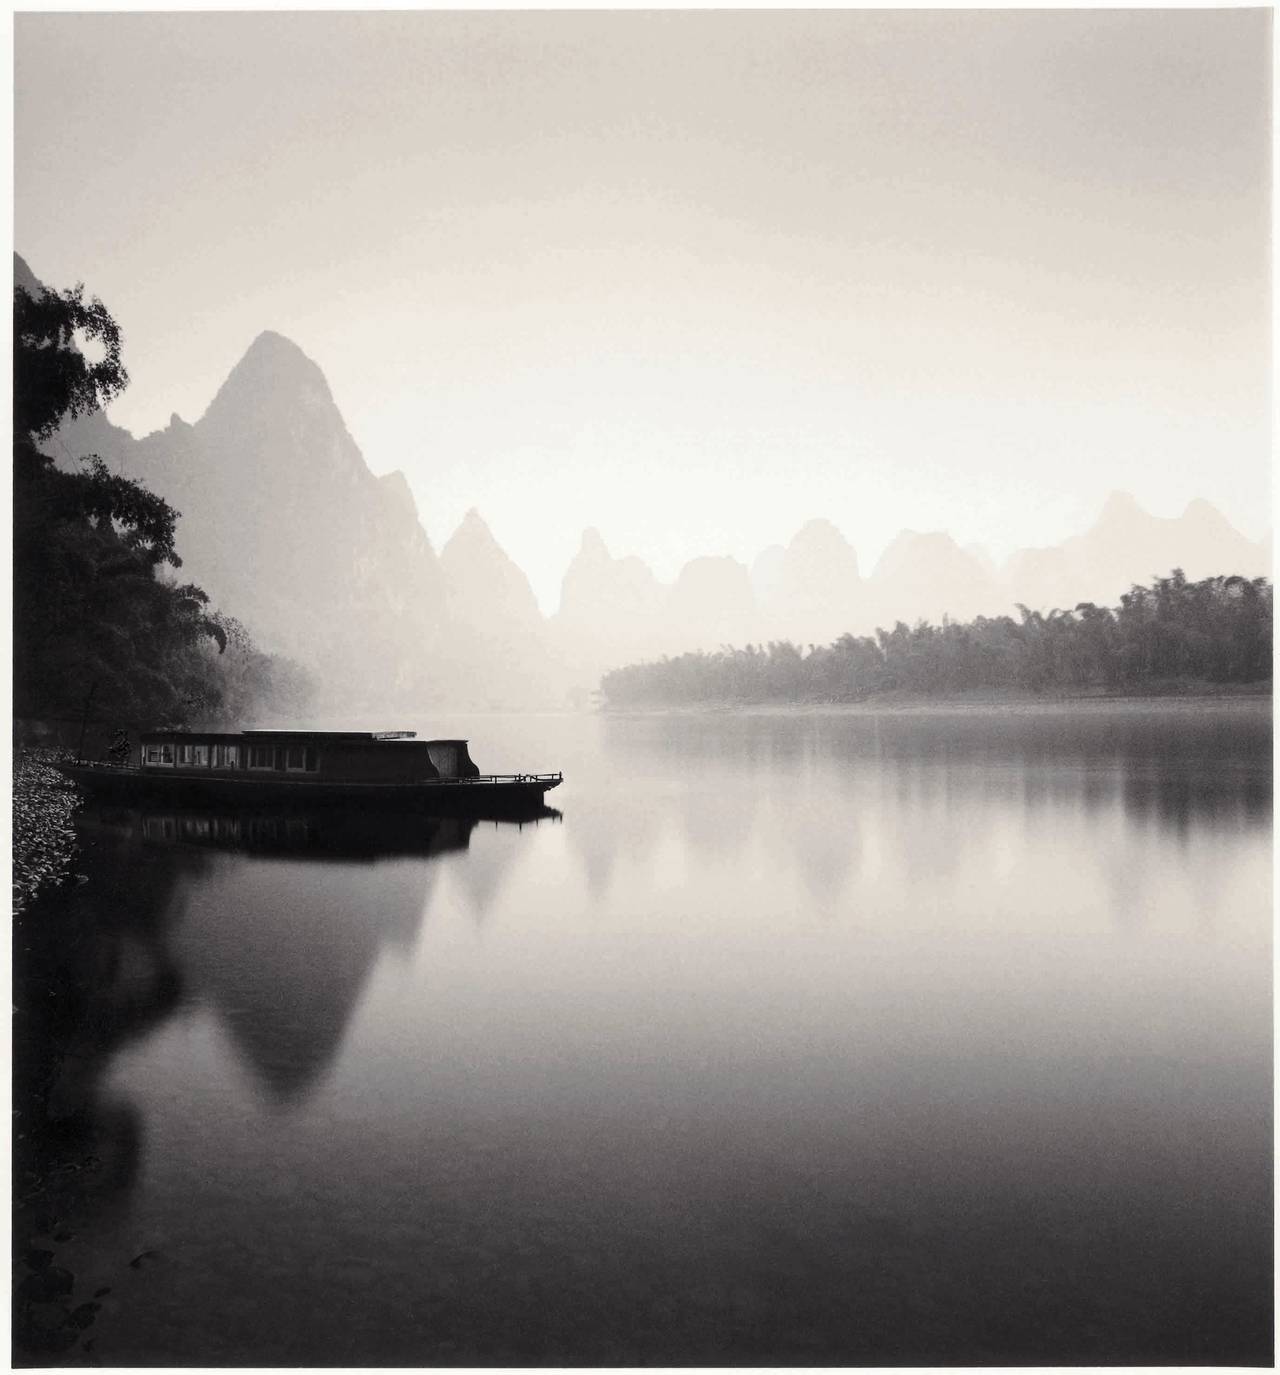 Michael Kenna Landscape Photograph - Lijiang River, Study 4, Guilin, China, 2006